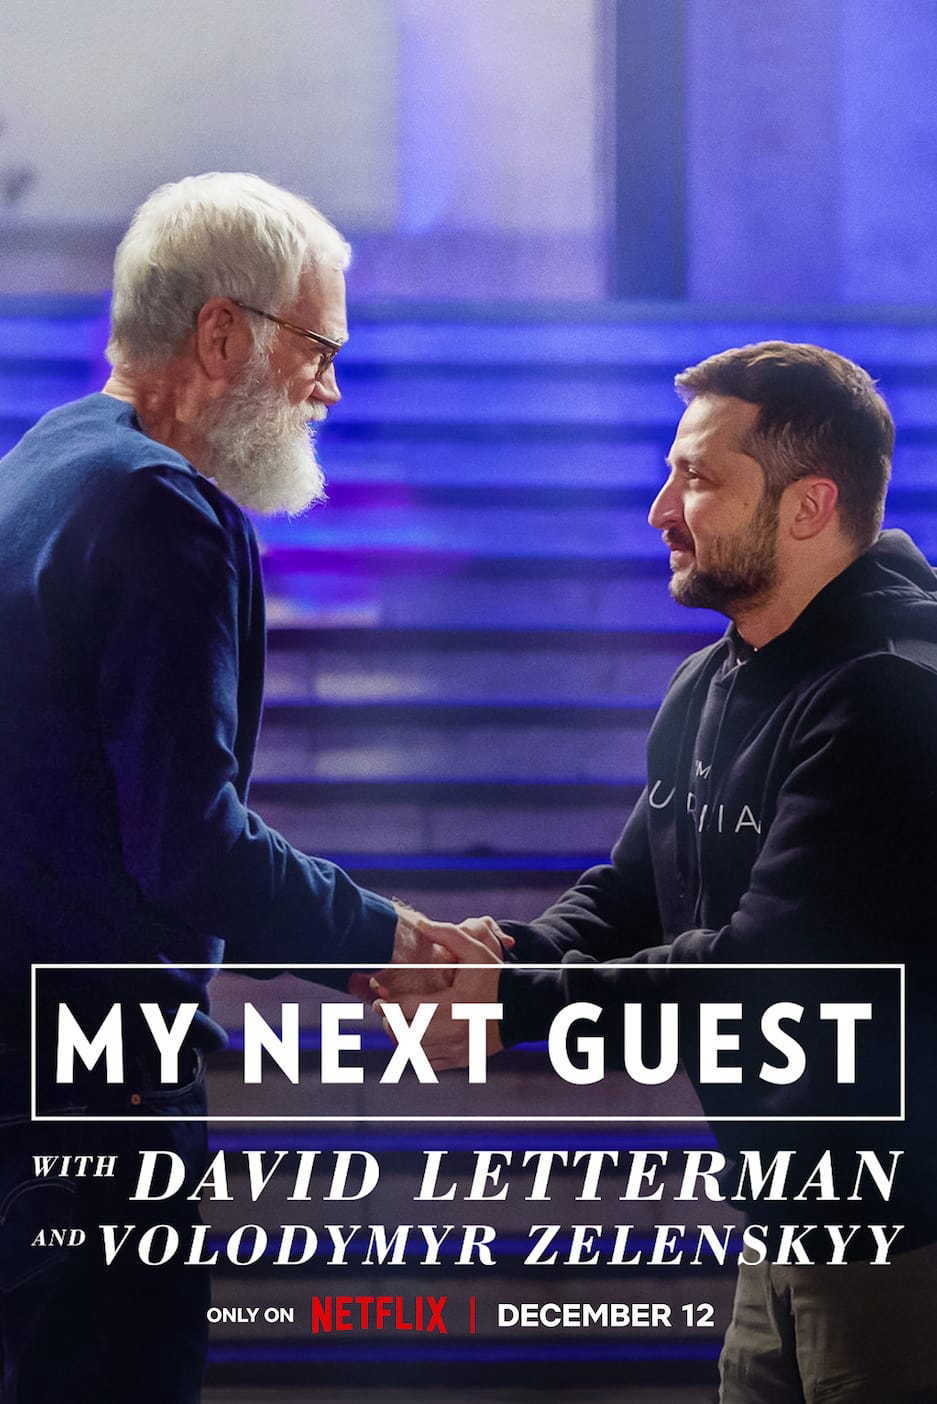 Xem Phim David Letterman: Vị khách tiếp theo là Volodymyr Zelenskyy (My Next Guest with David Letterman and Volodymyr Zelenskyy)